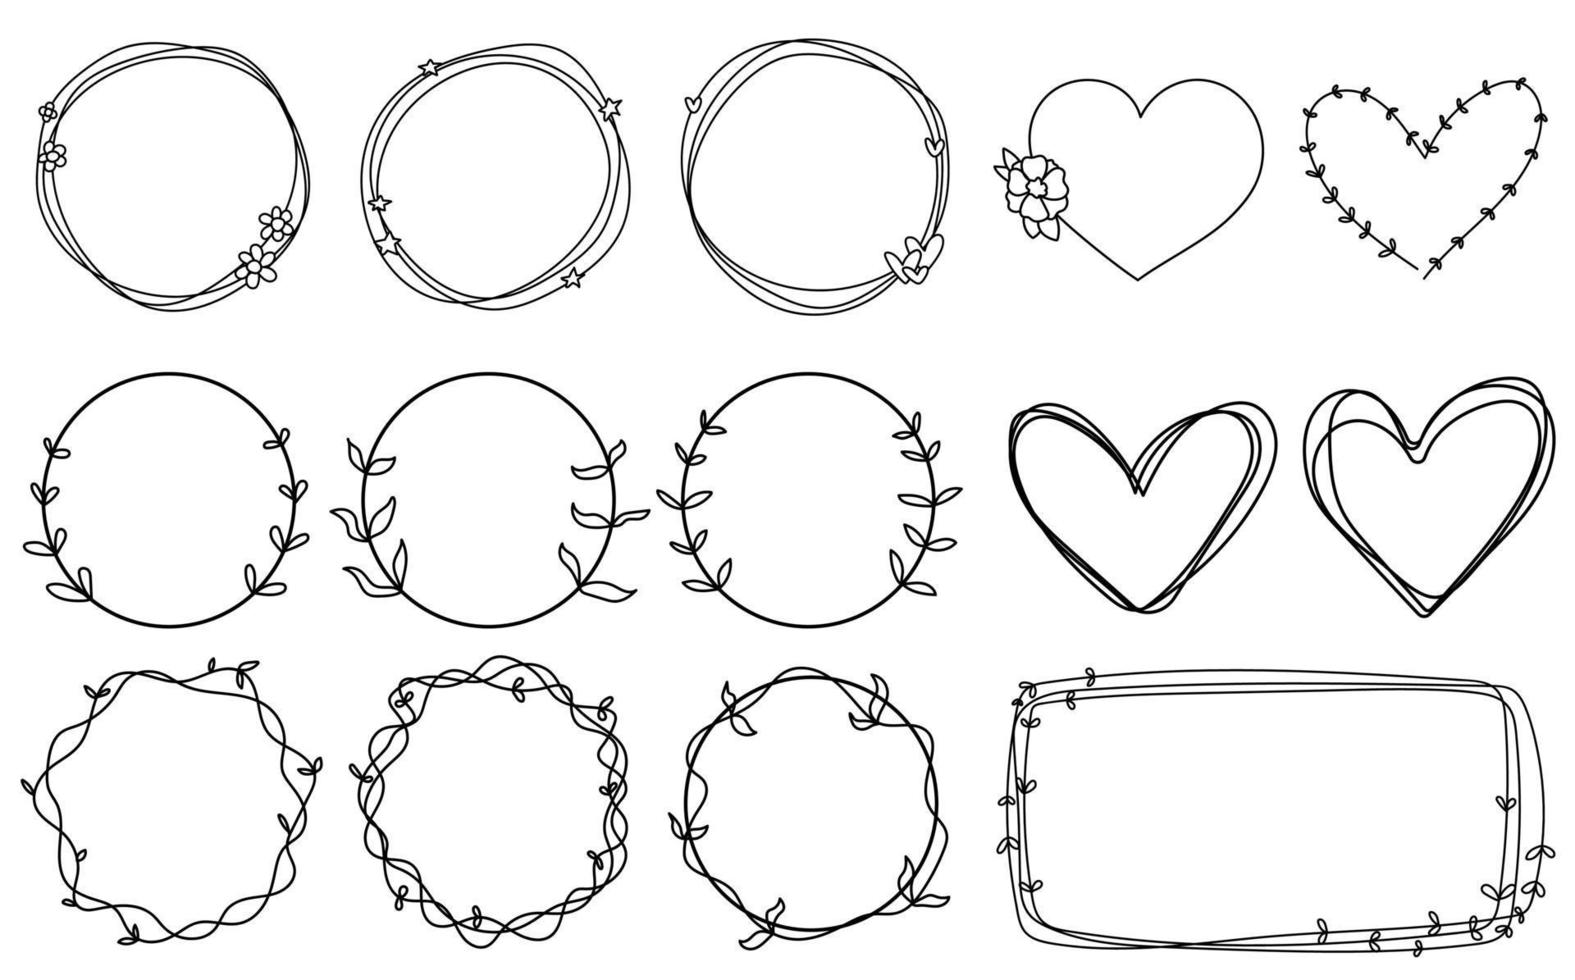 quadros doodle desenhado à mão linhas redondas casamento coleção isolada vetor